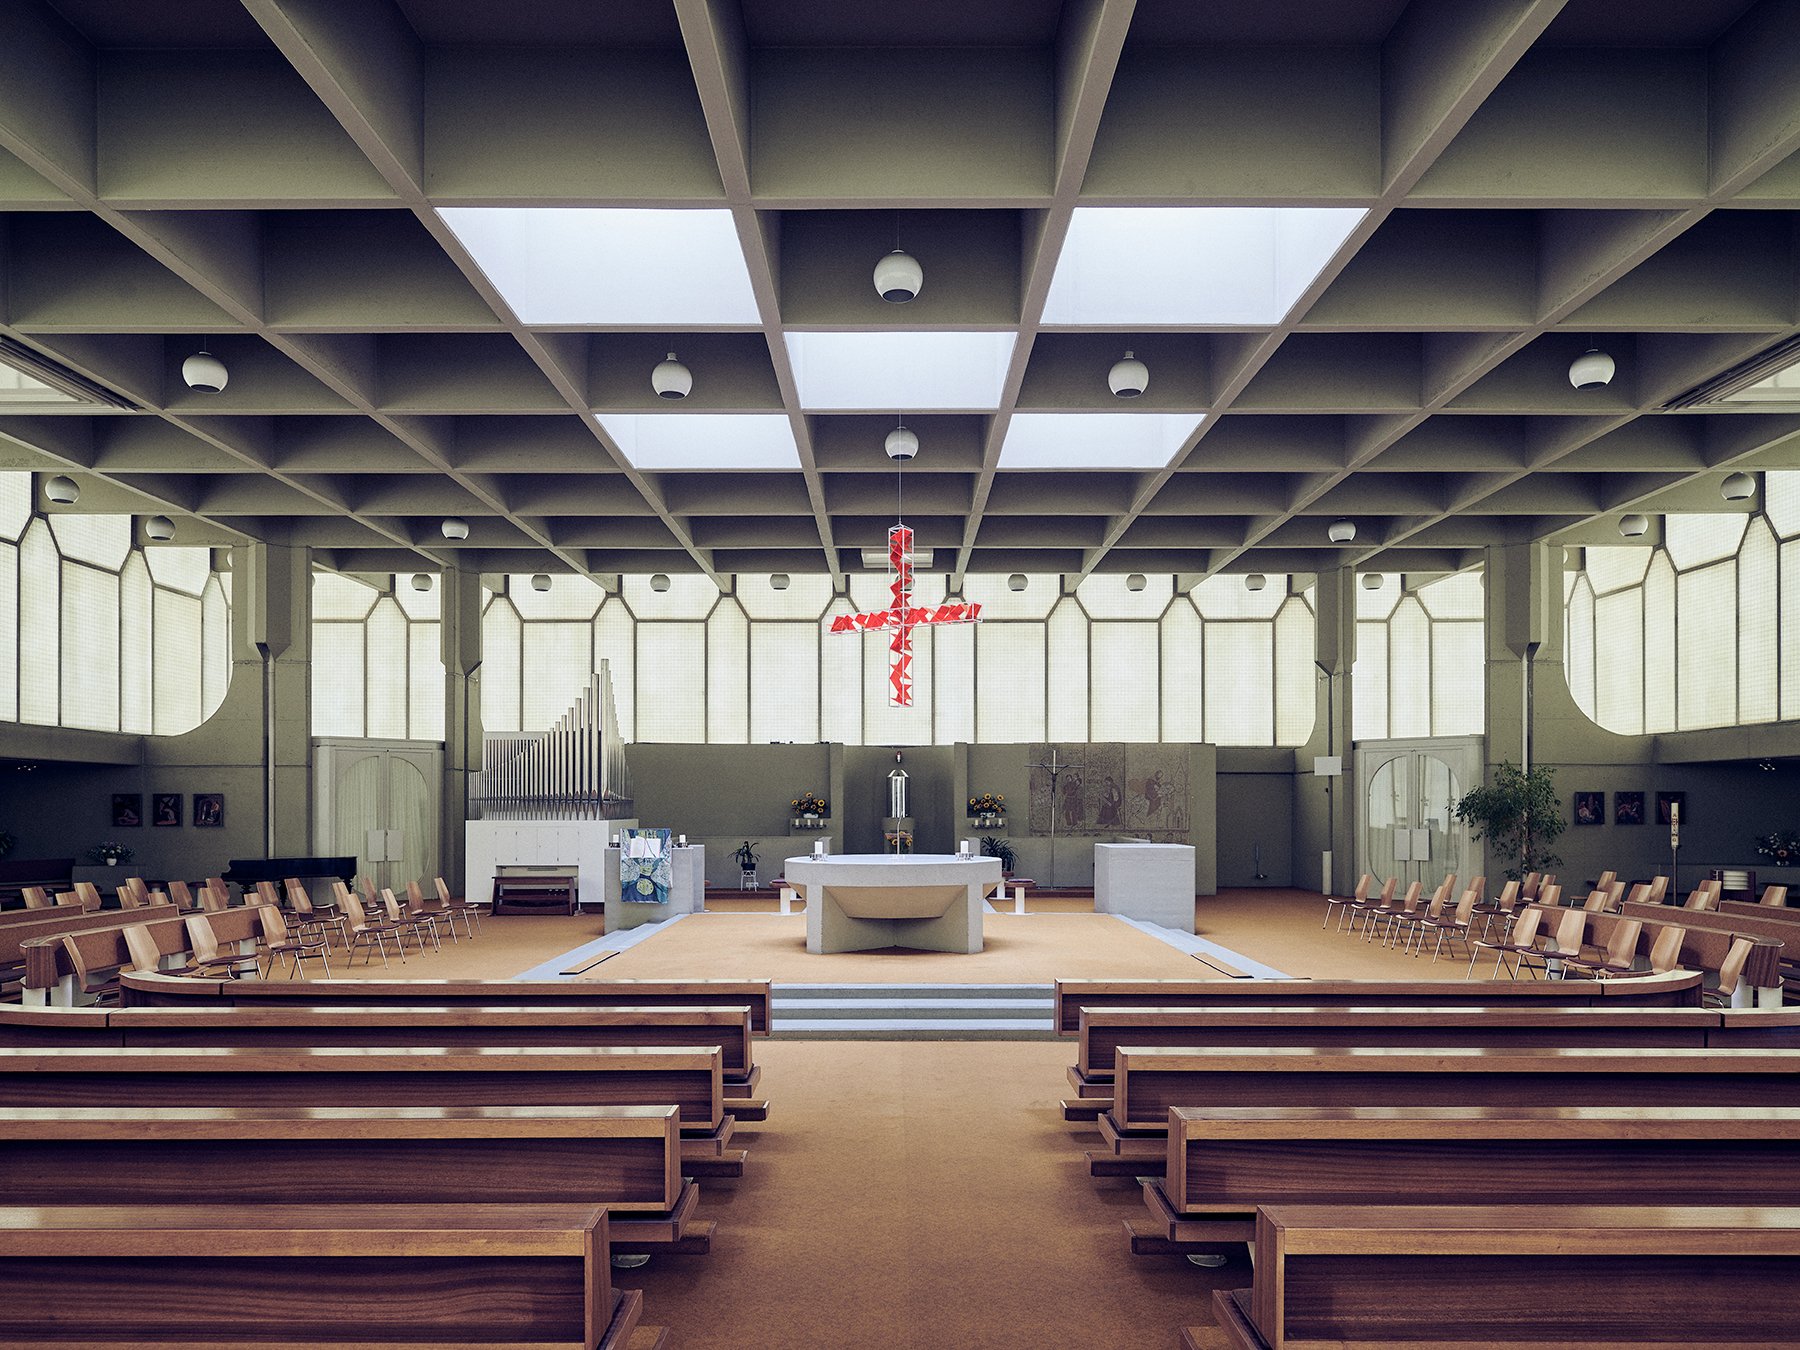 Petrus Canisius Kirche - Innsbruck, Austria - Horst Parson, 1968-1970